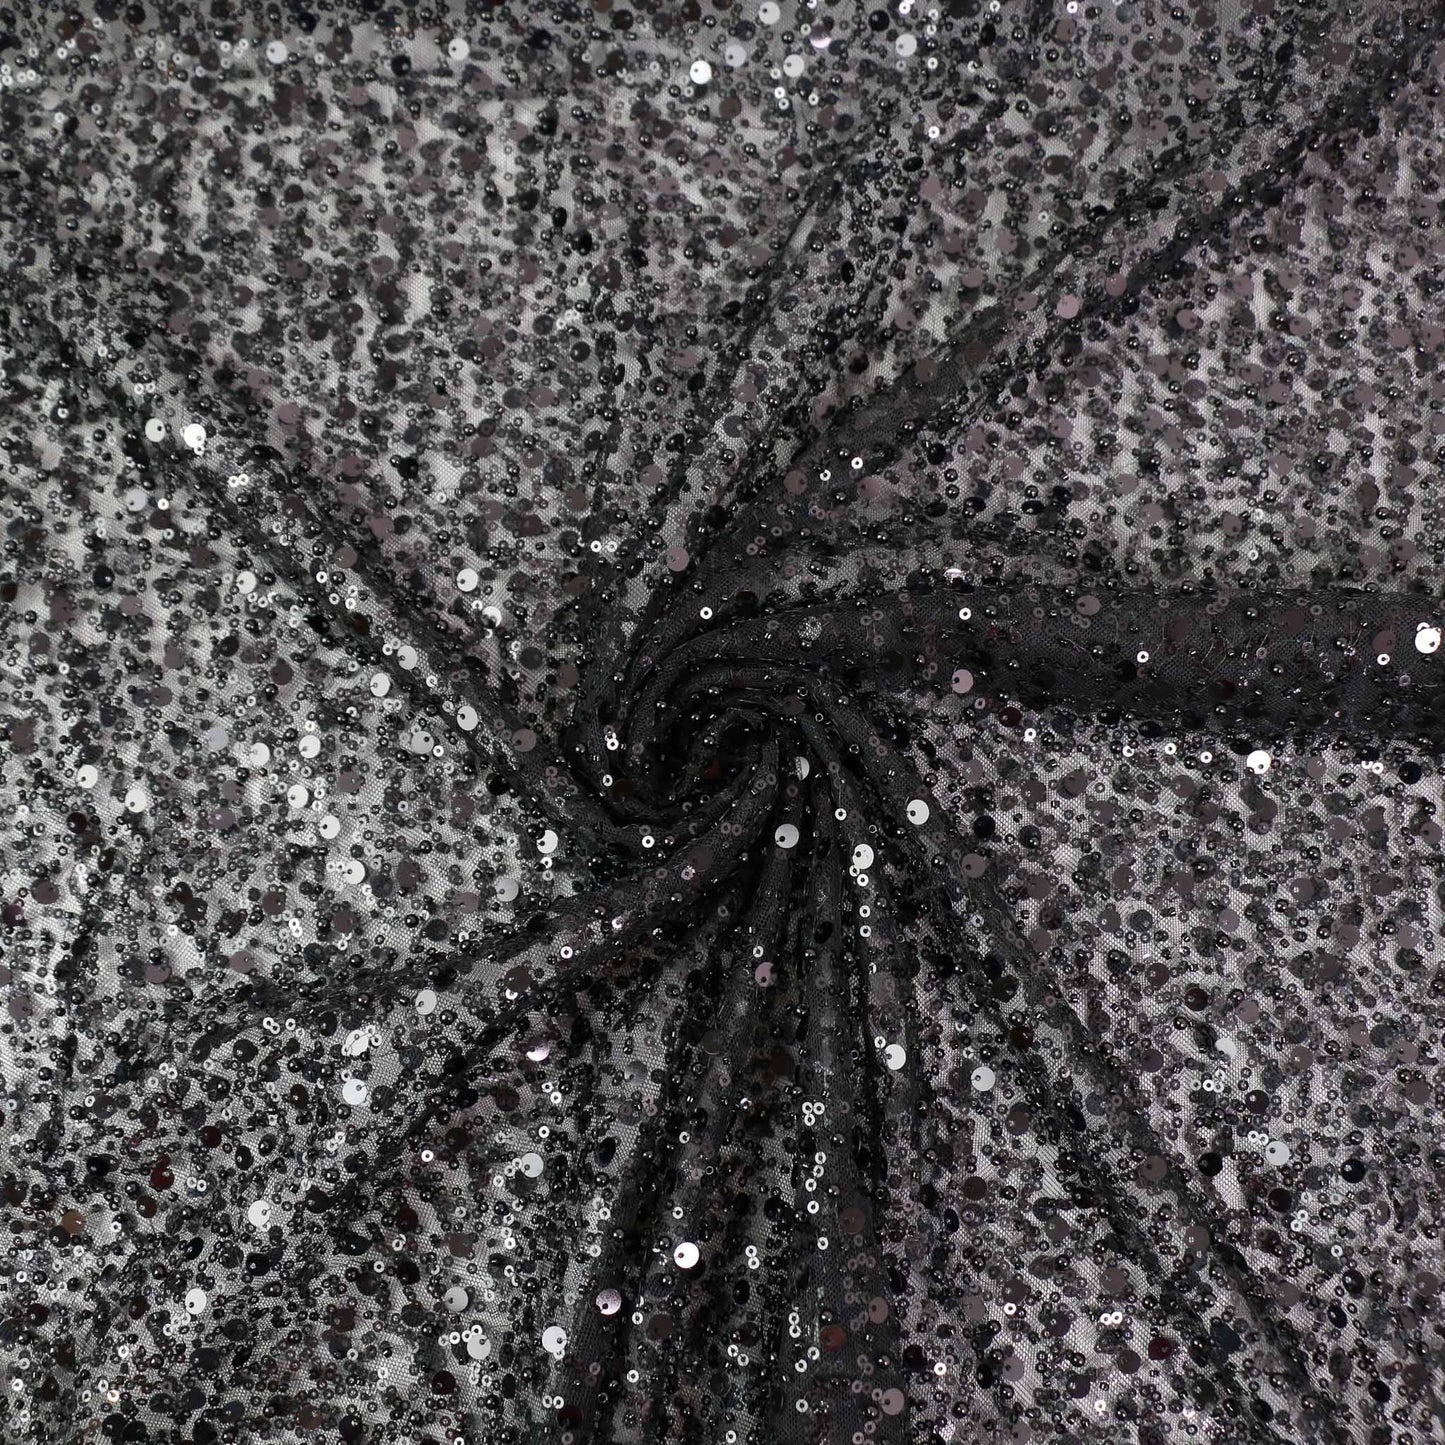 Sequin Fabric - Black